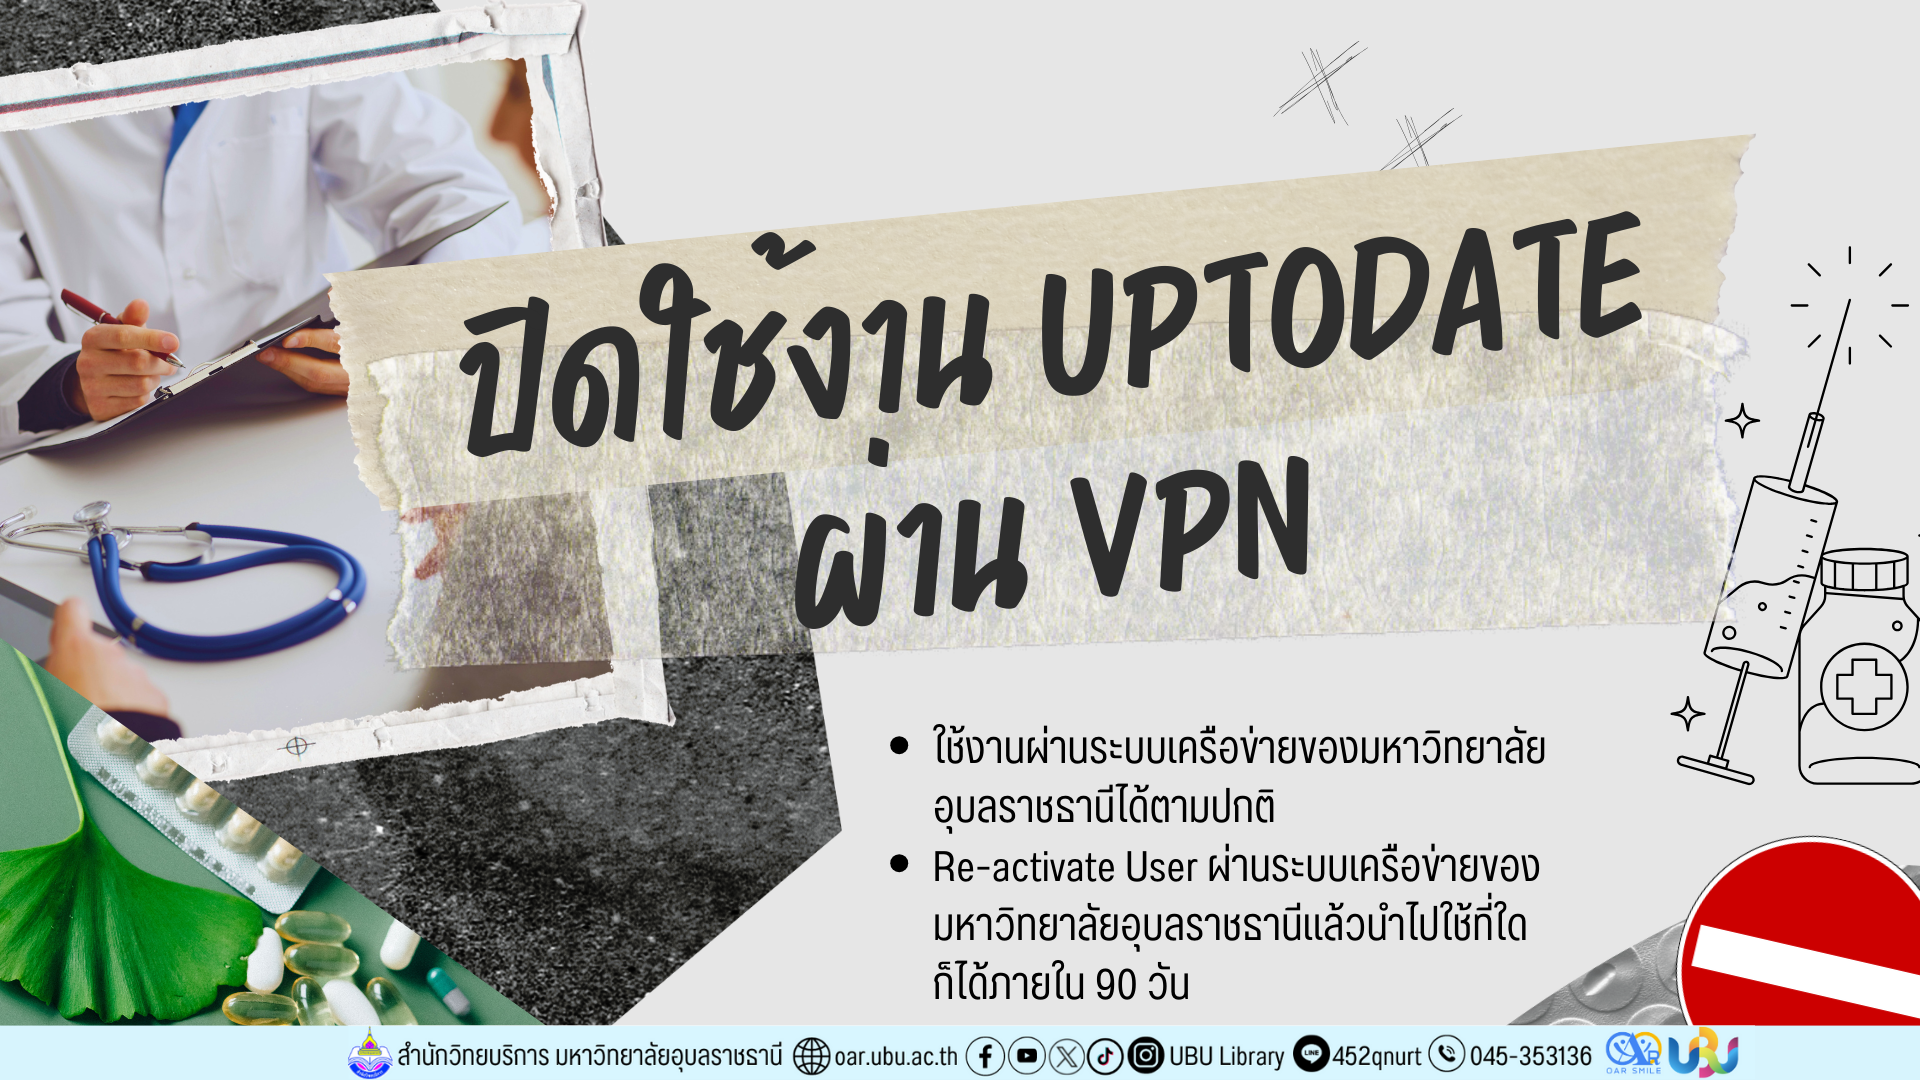 ปิดใช้งาน UpToDate ผ่าน VPN